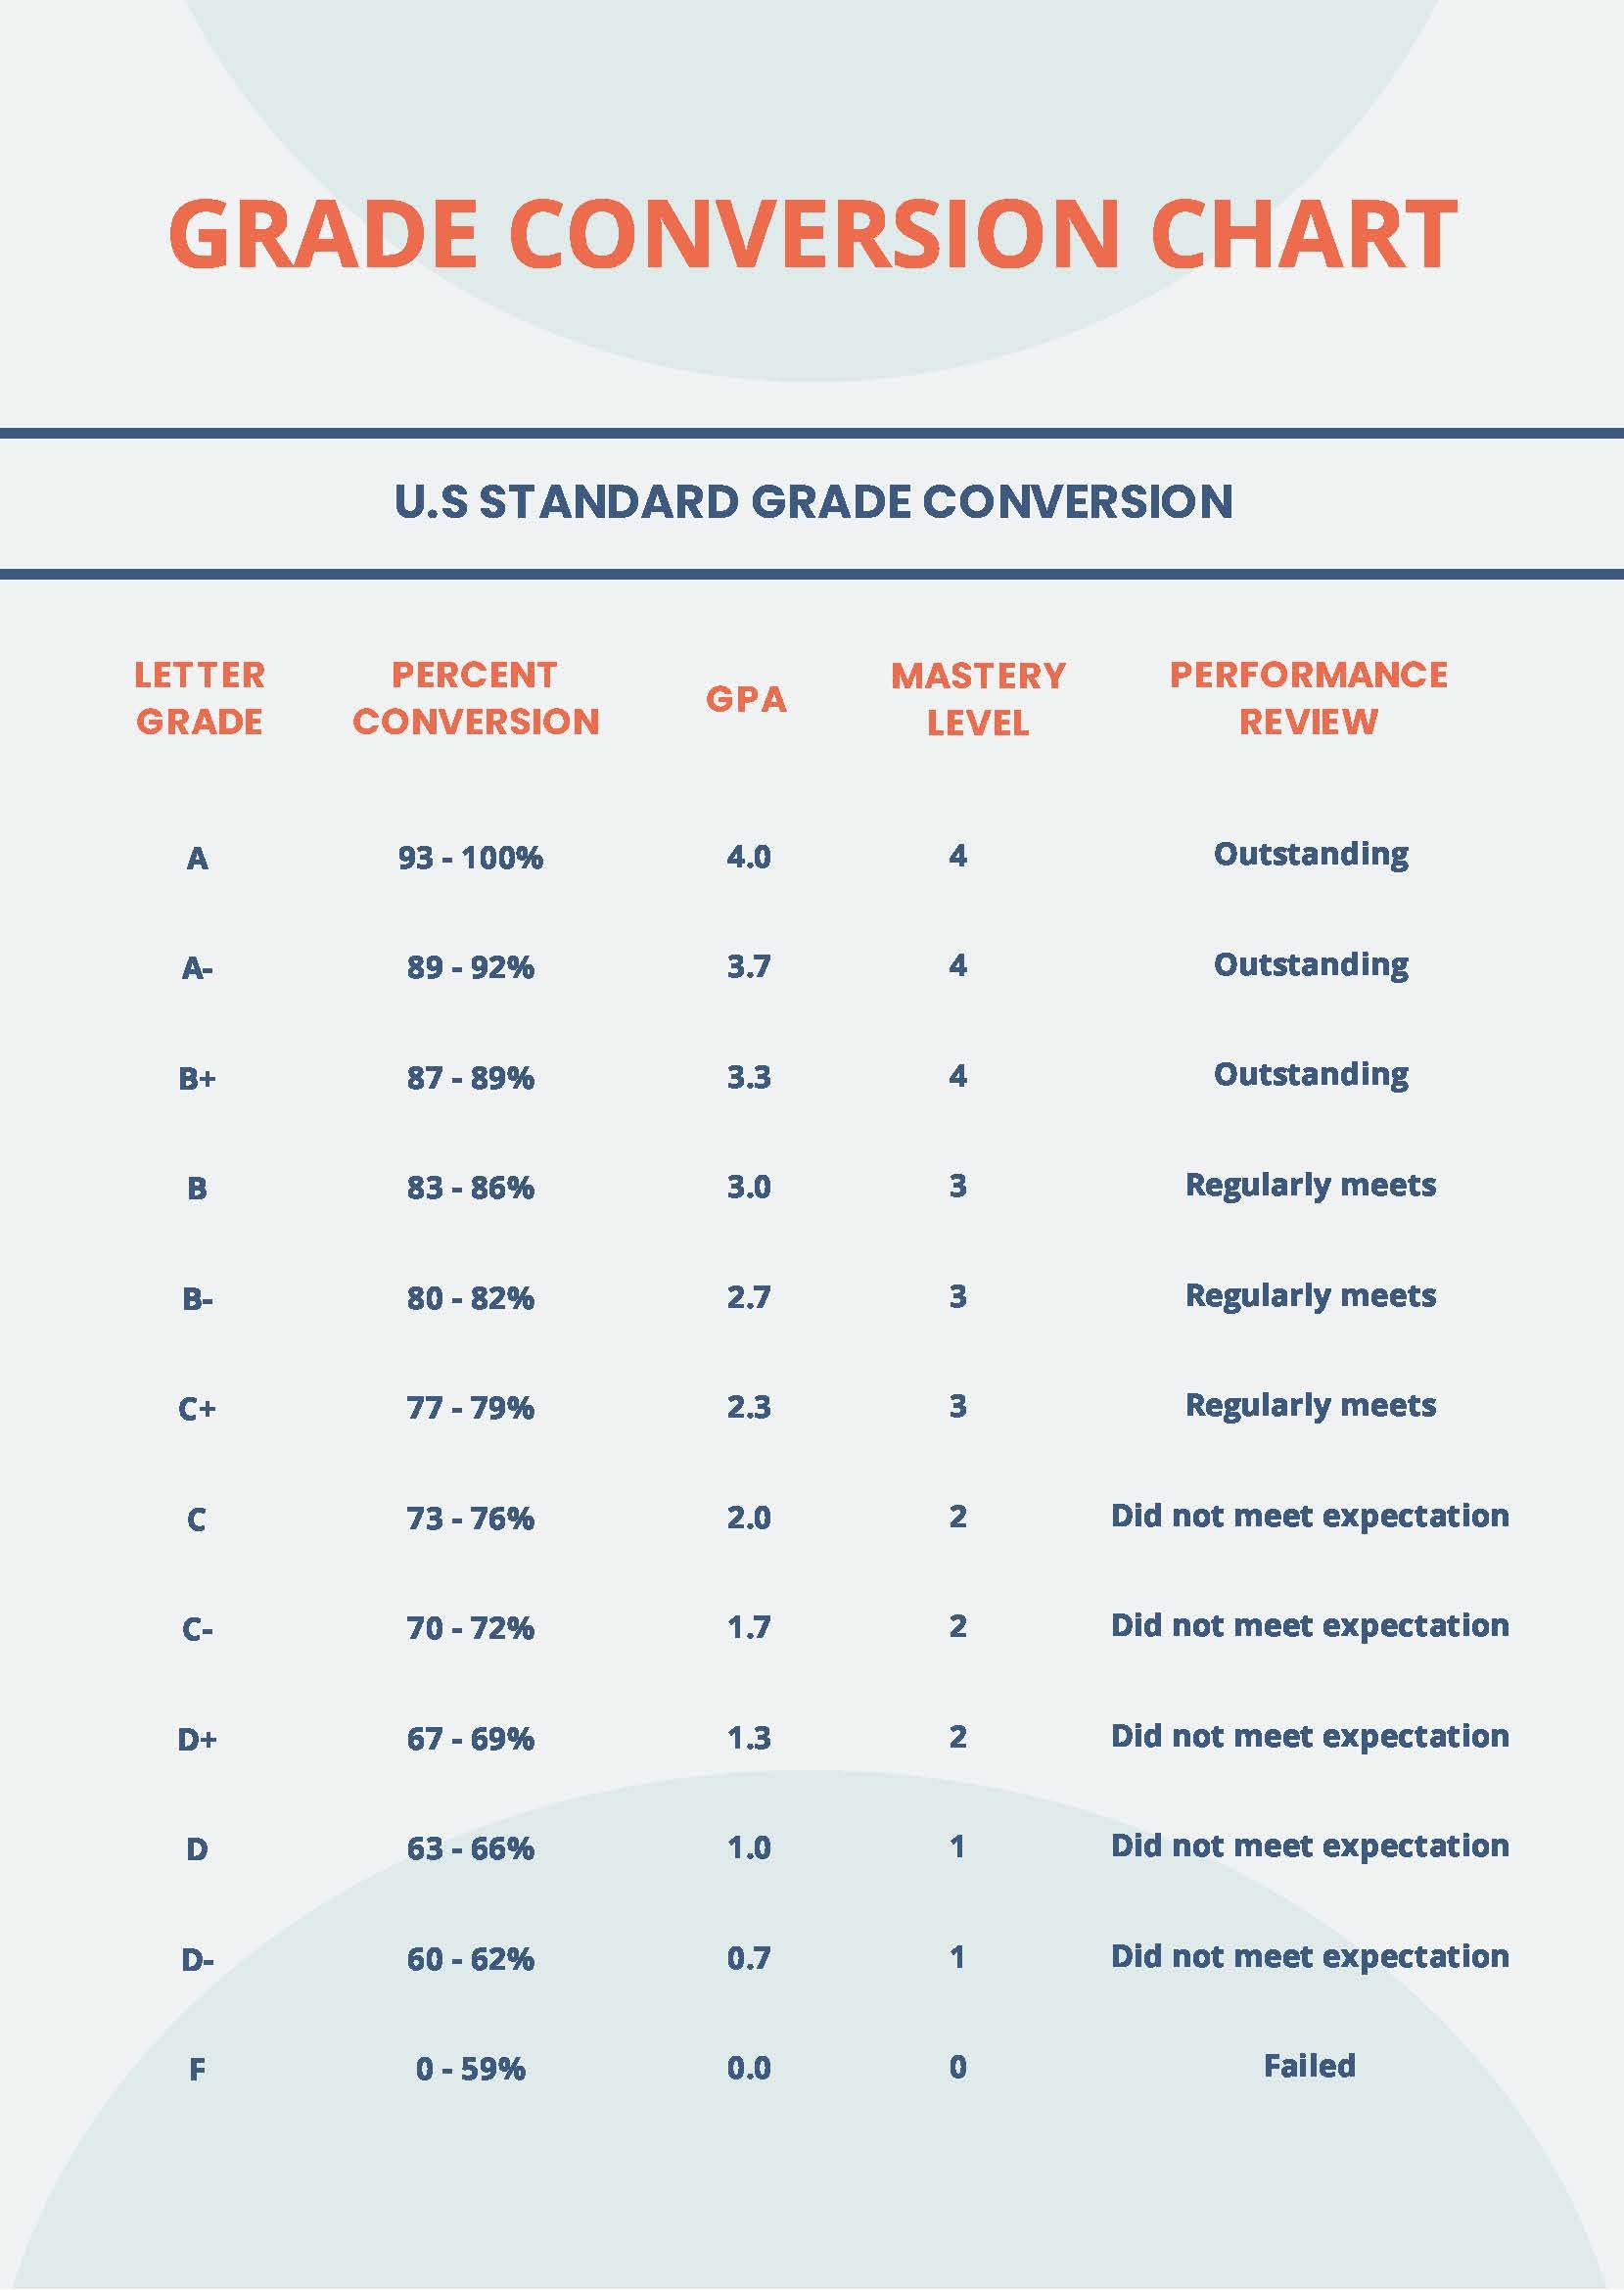 Grade Conversion Chart in PDF